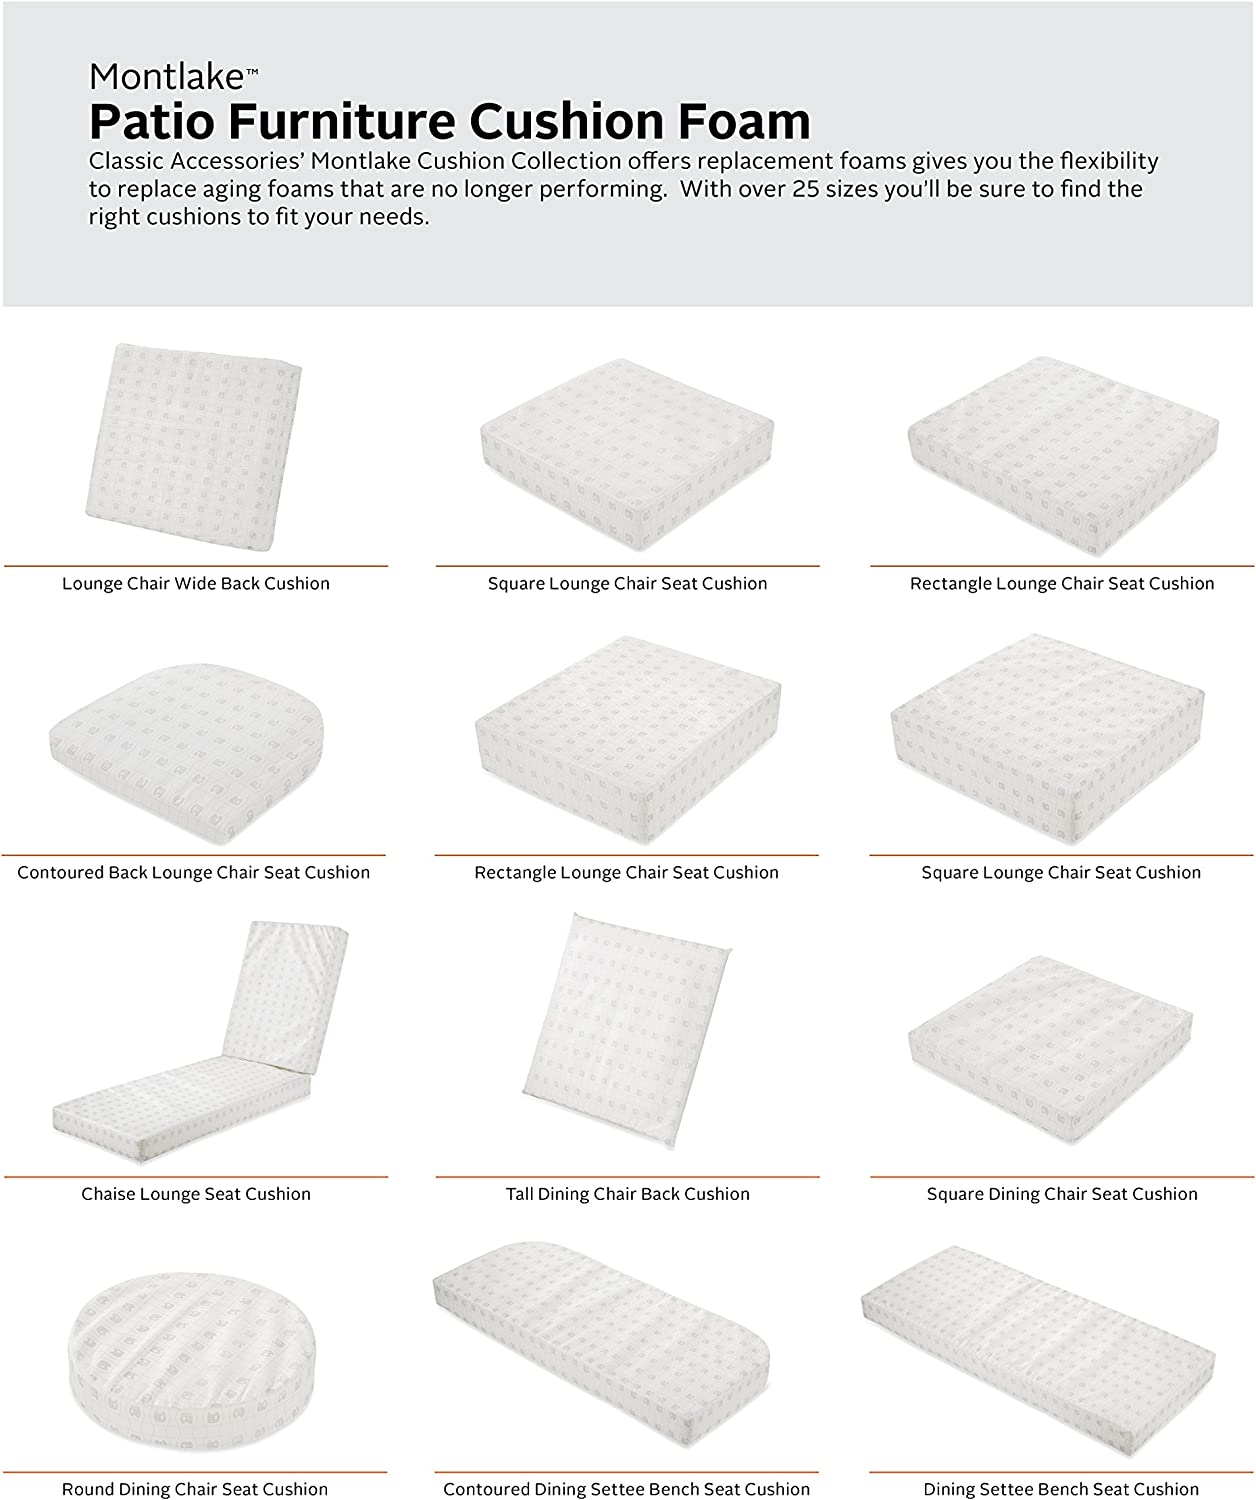 Classic Accessories 21 x 21 x 3 Inch Square Patio Cushion Foam